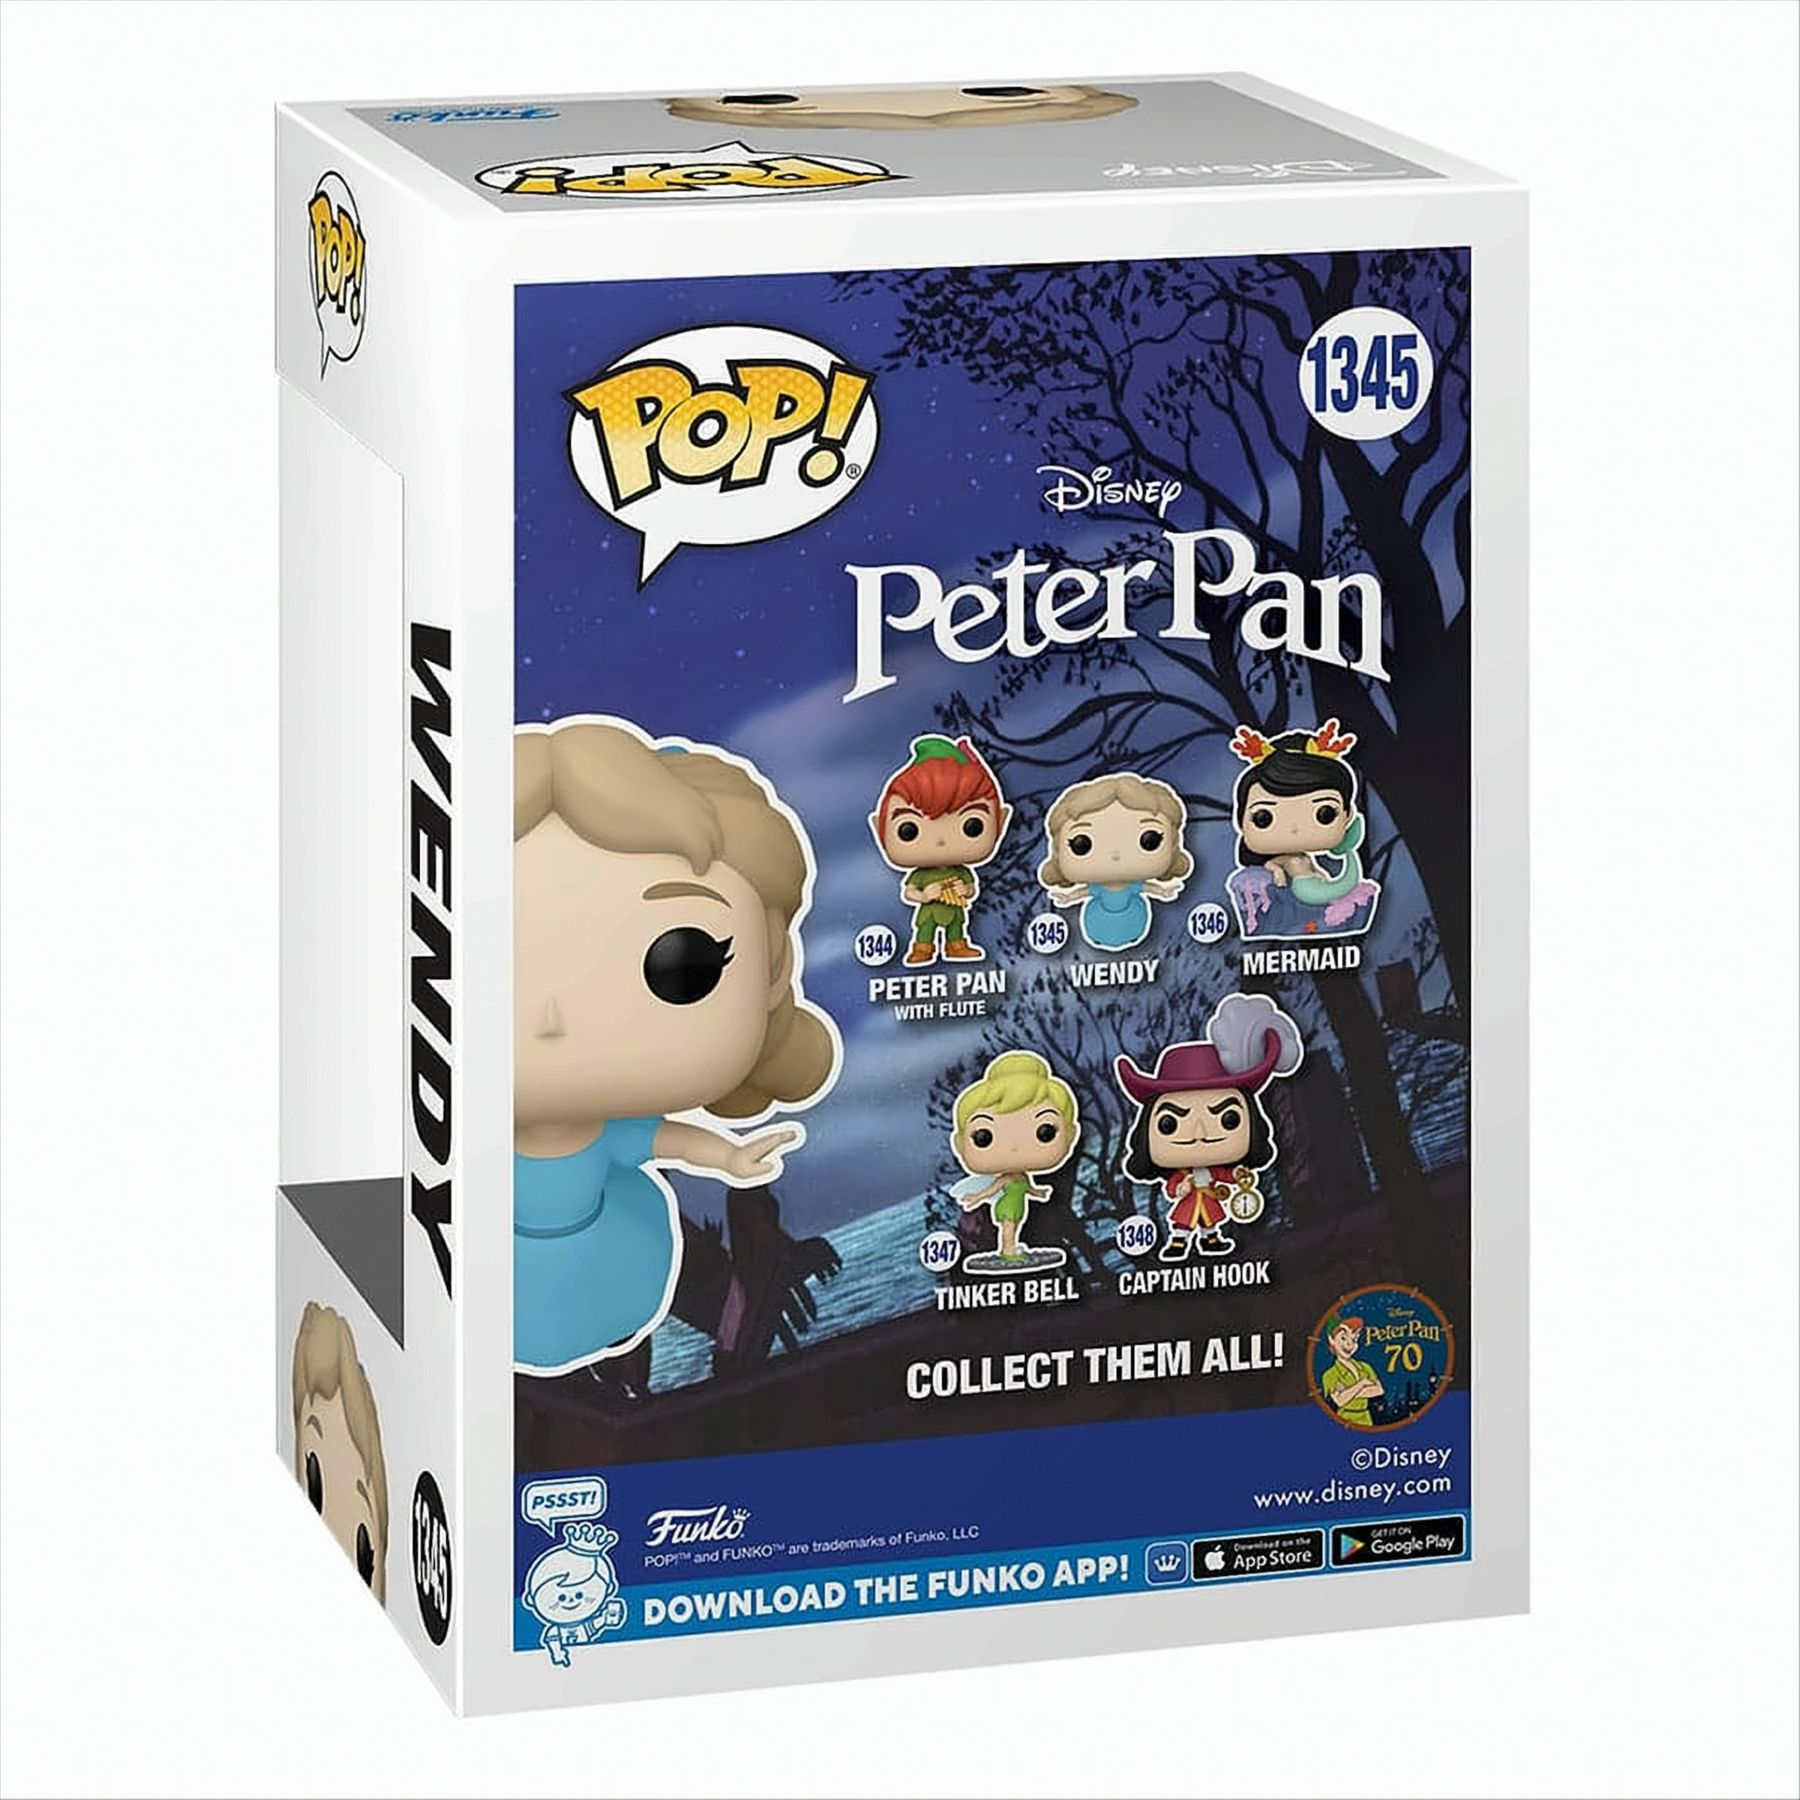 70th Peter POP Pan Disney Wendy - -